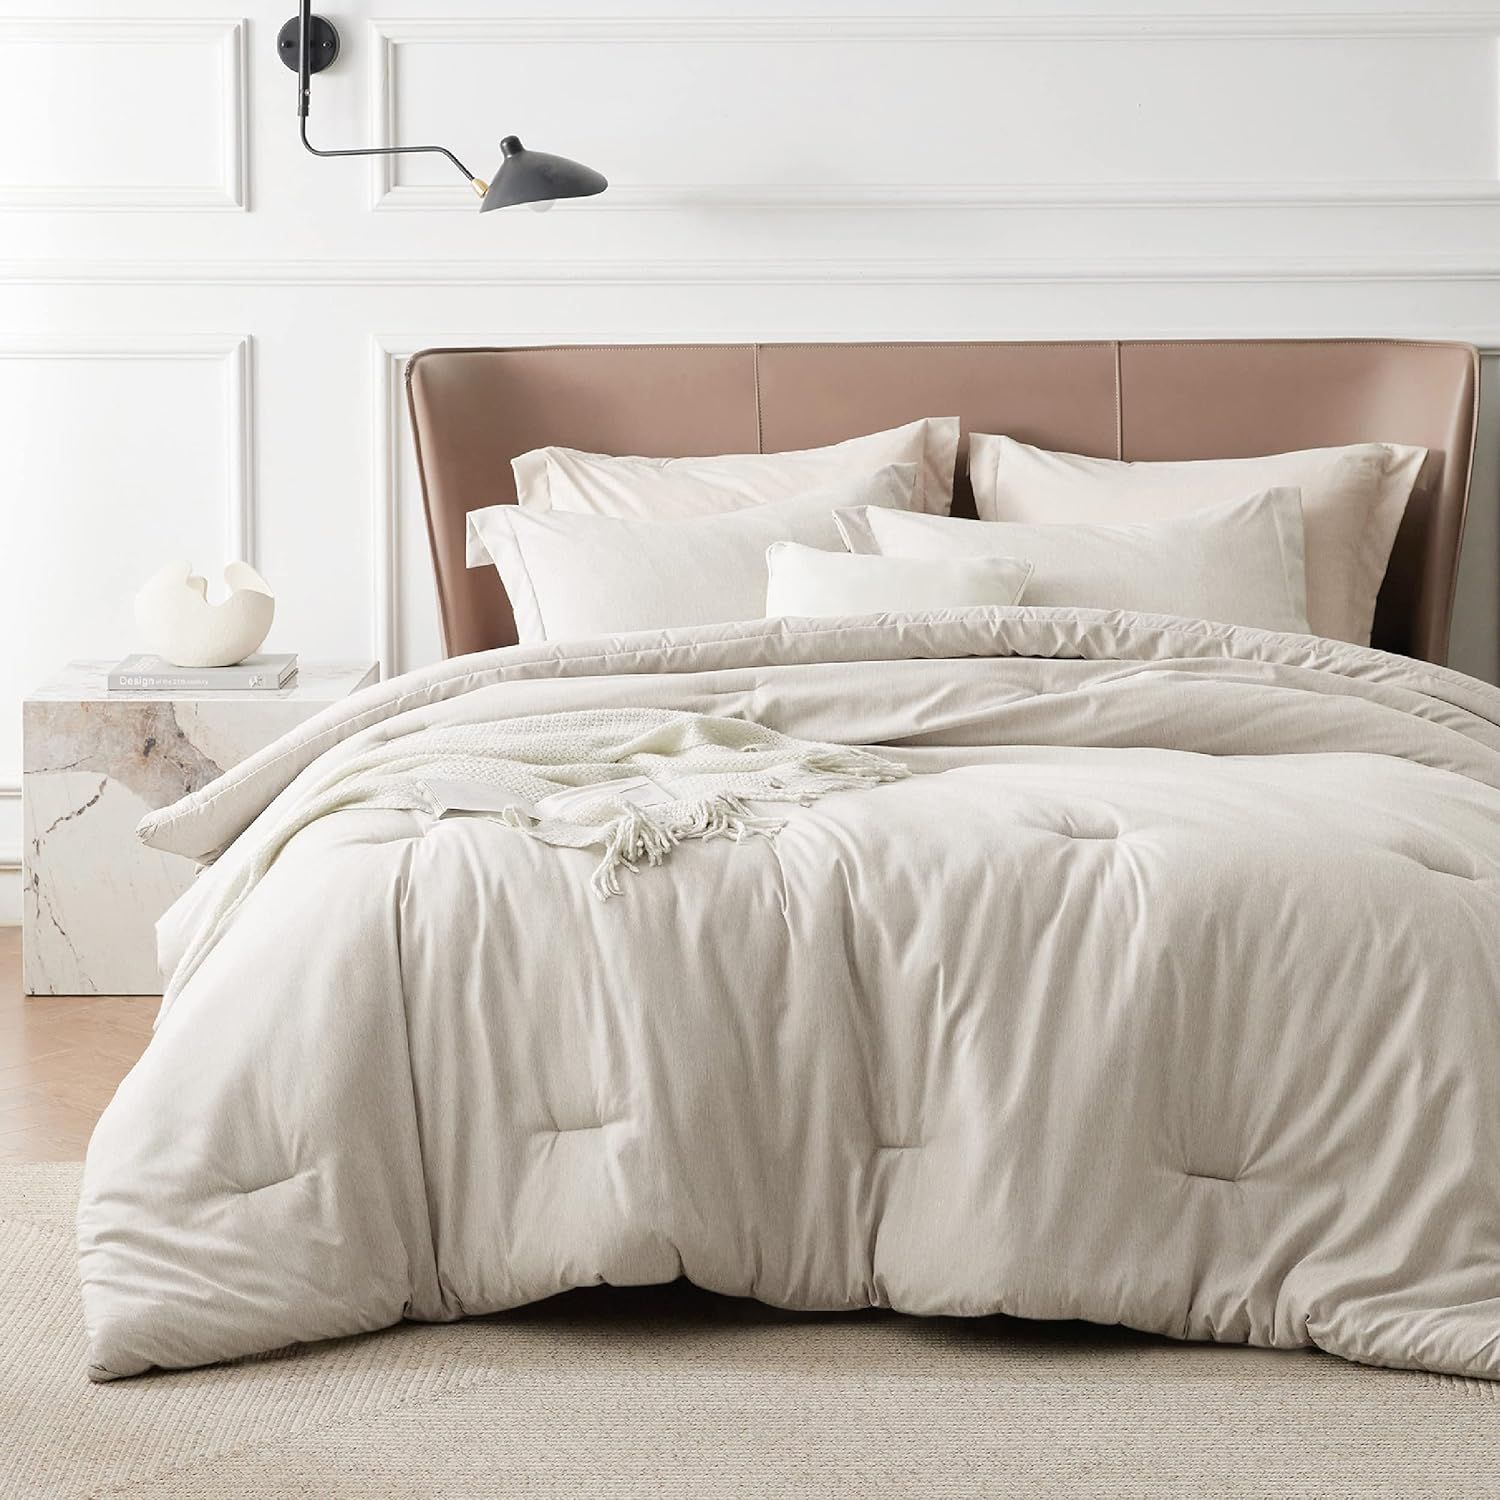 Bedsure Queen Comforter Set - Beige Queen Size Comforter, Soft Bedding for All Seasons, Cationic ... | Amazon (US)